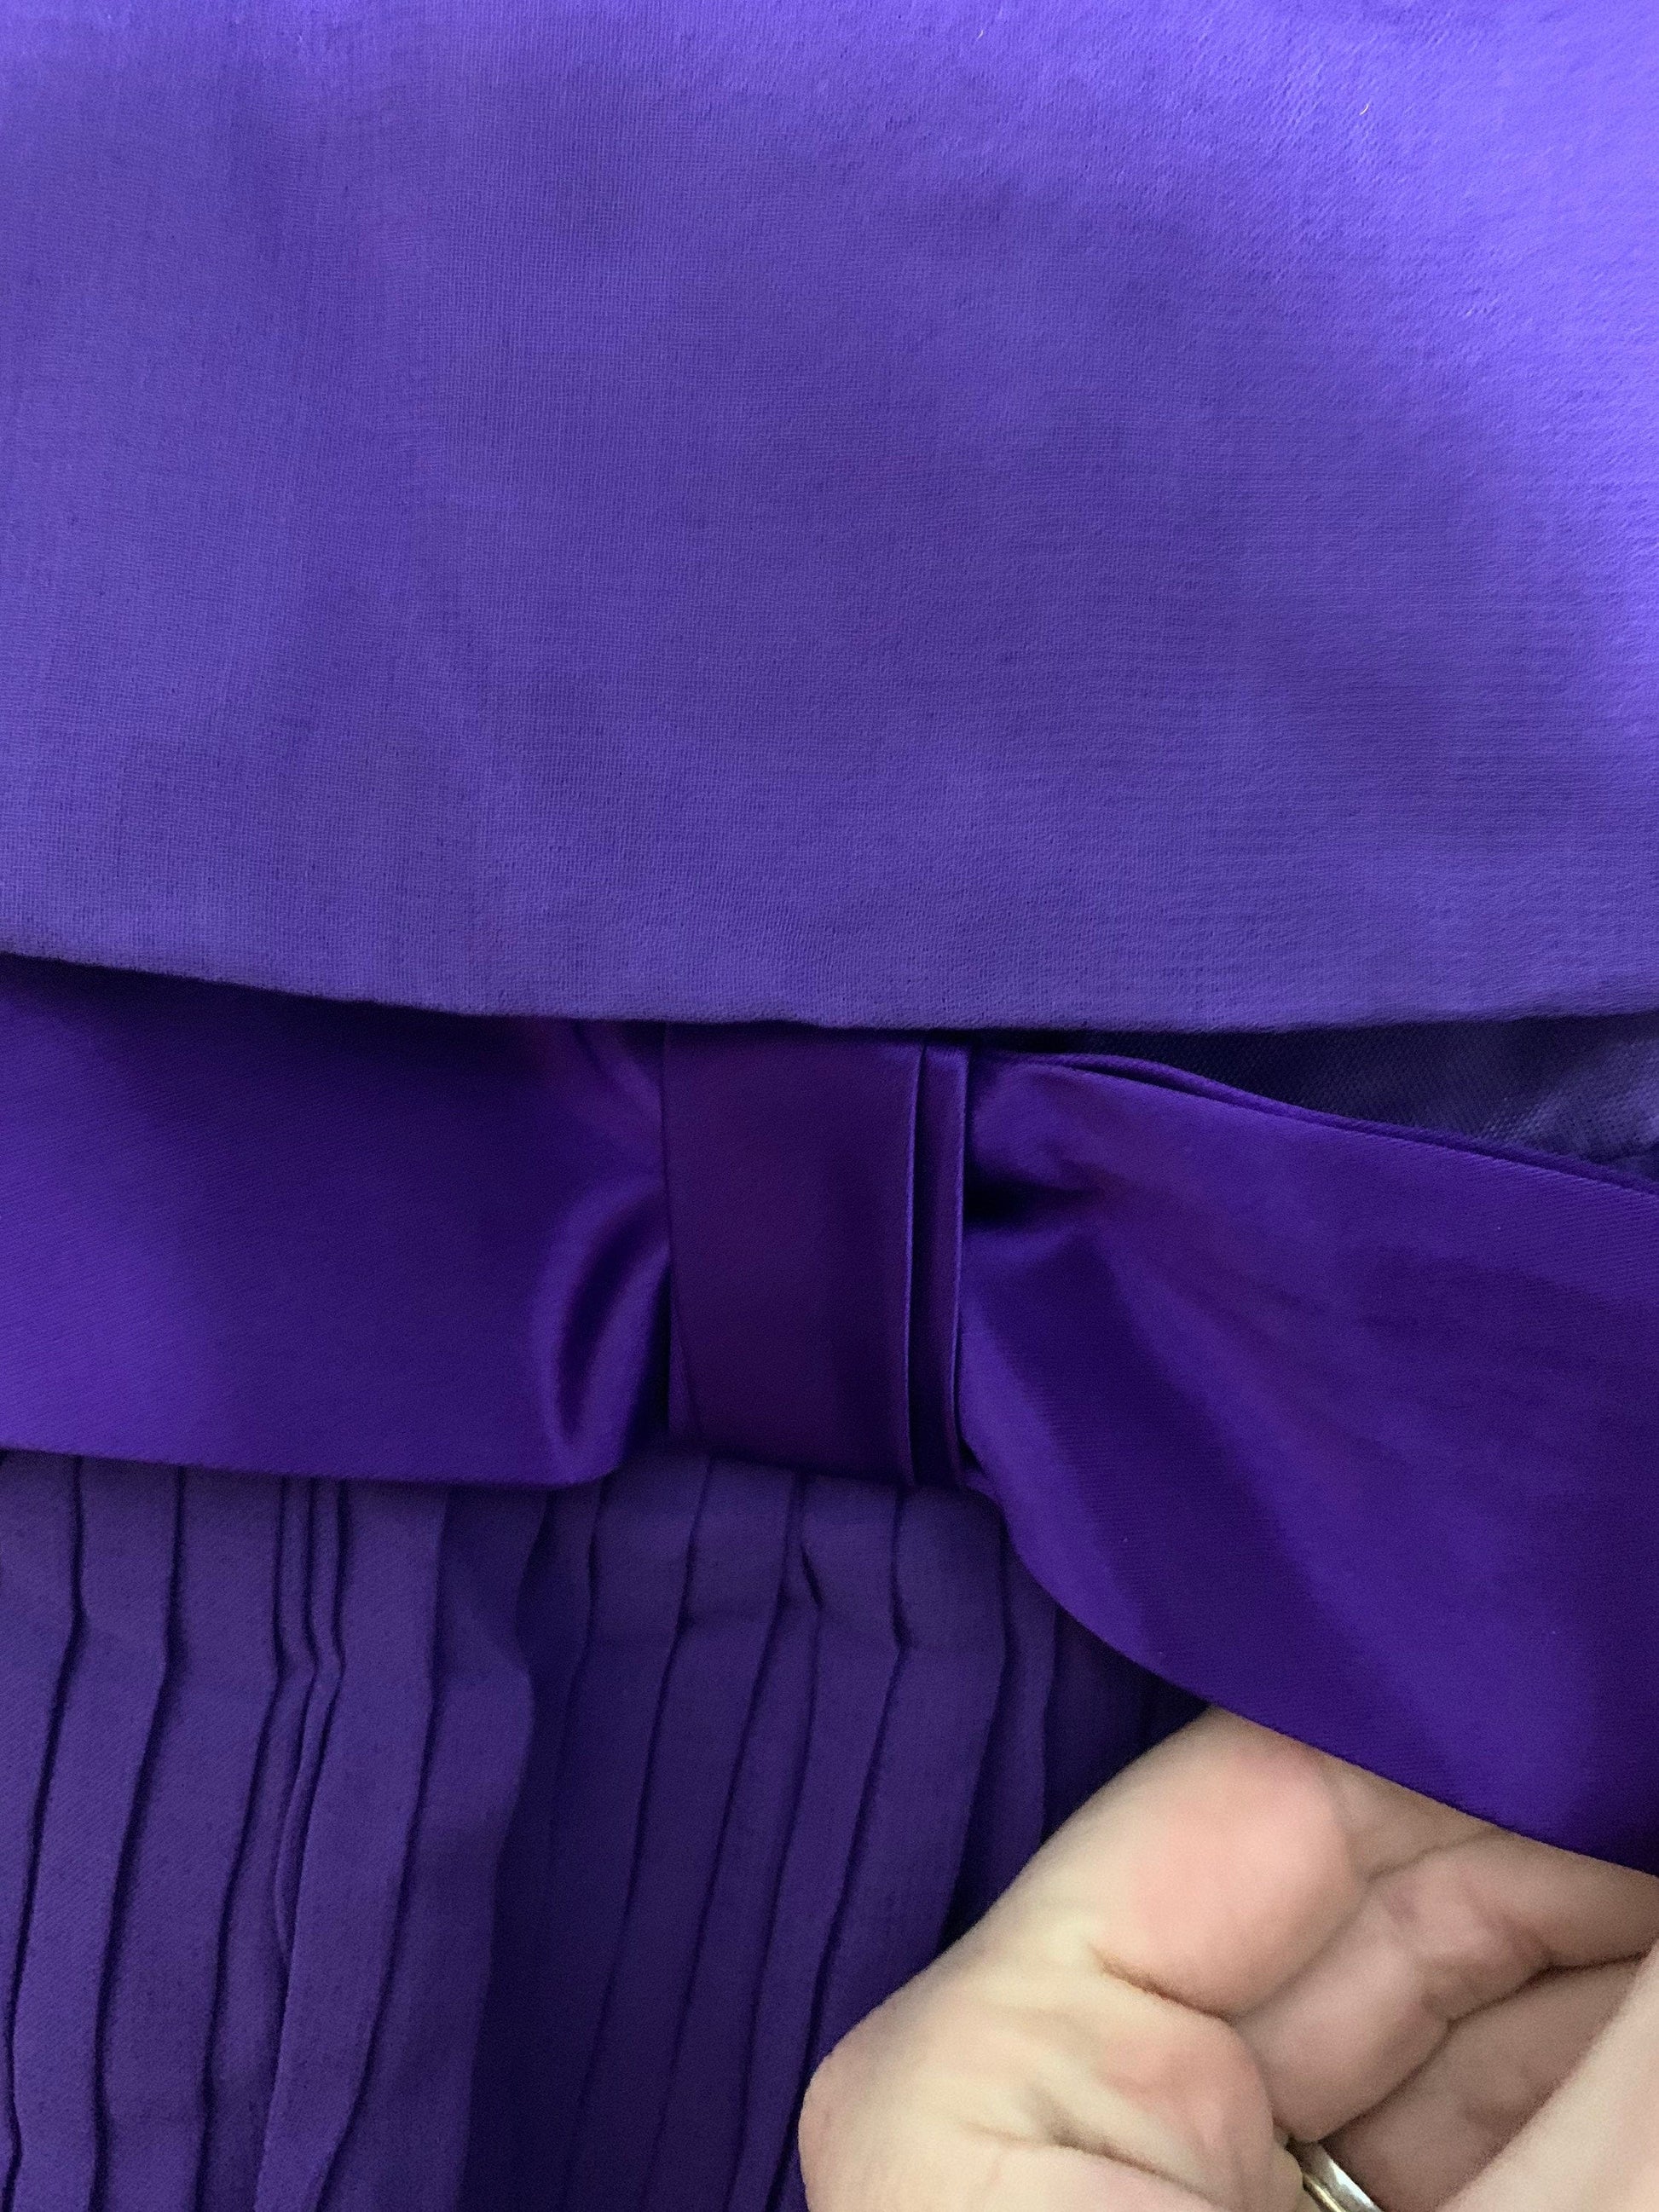 Vintage Purple Chiffon Dress layered Pleated shoestring strap Dress 80s C&A - Chiffon RaRa